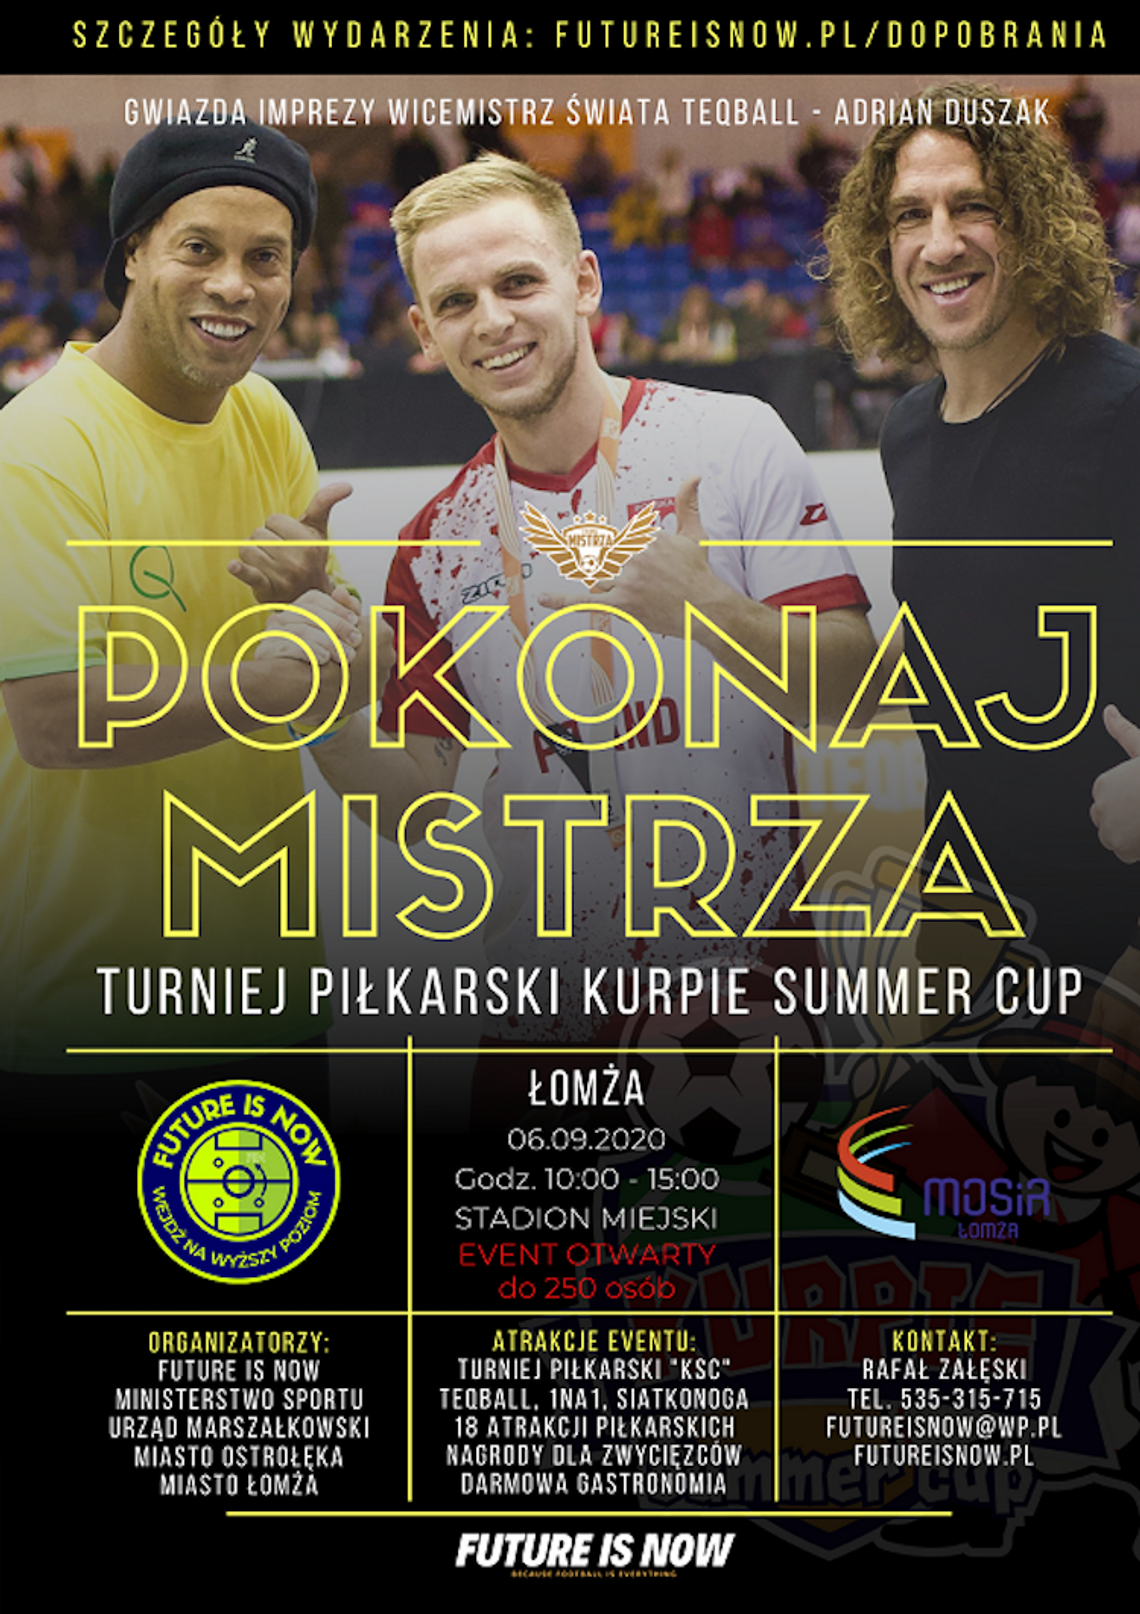 Podejmij wyzwanie z "Pokonaj Mistrza"! Event piłkarski z Adrianem Duszakiem już 6 września w Łomży!